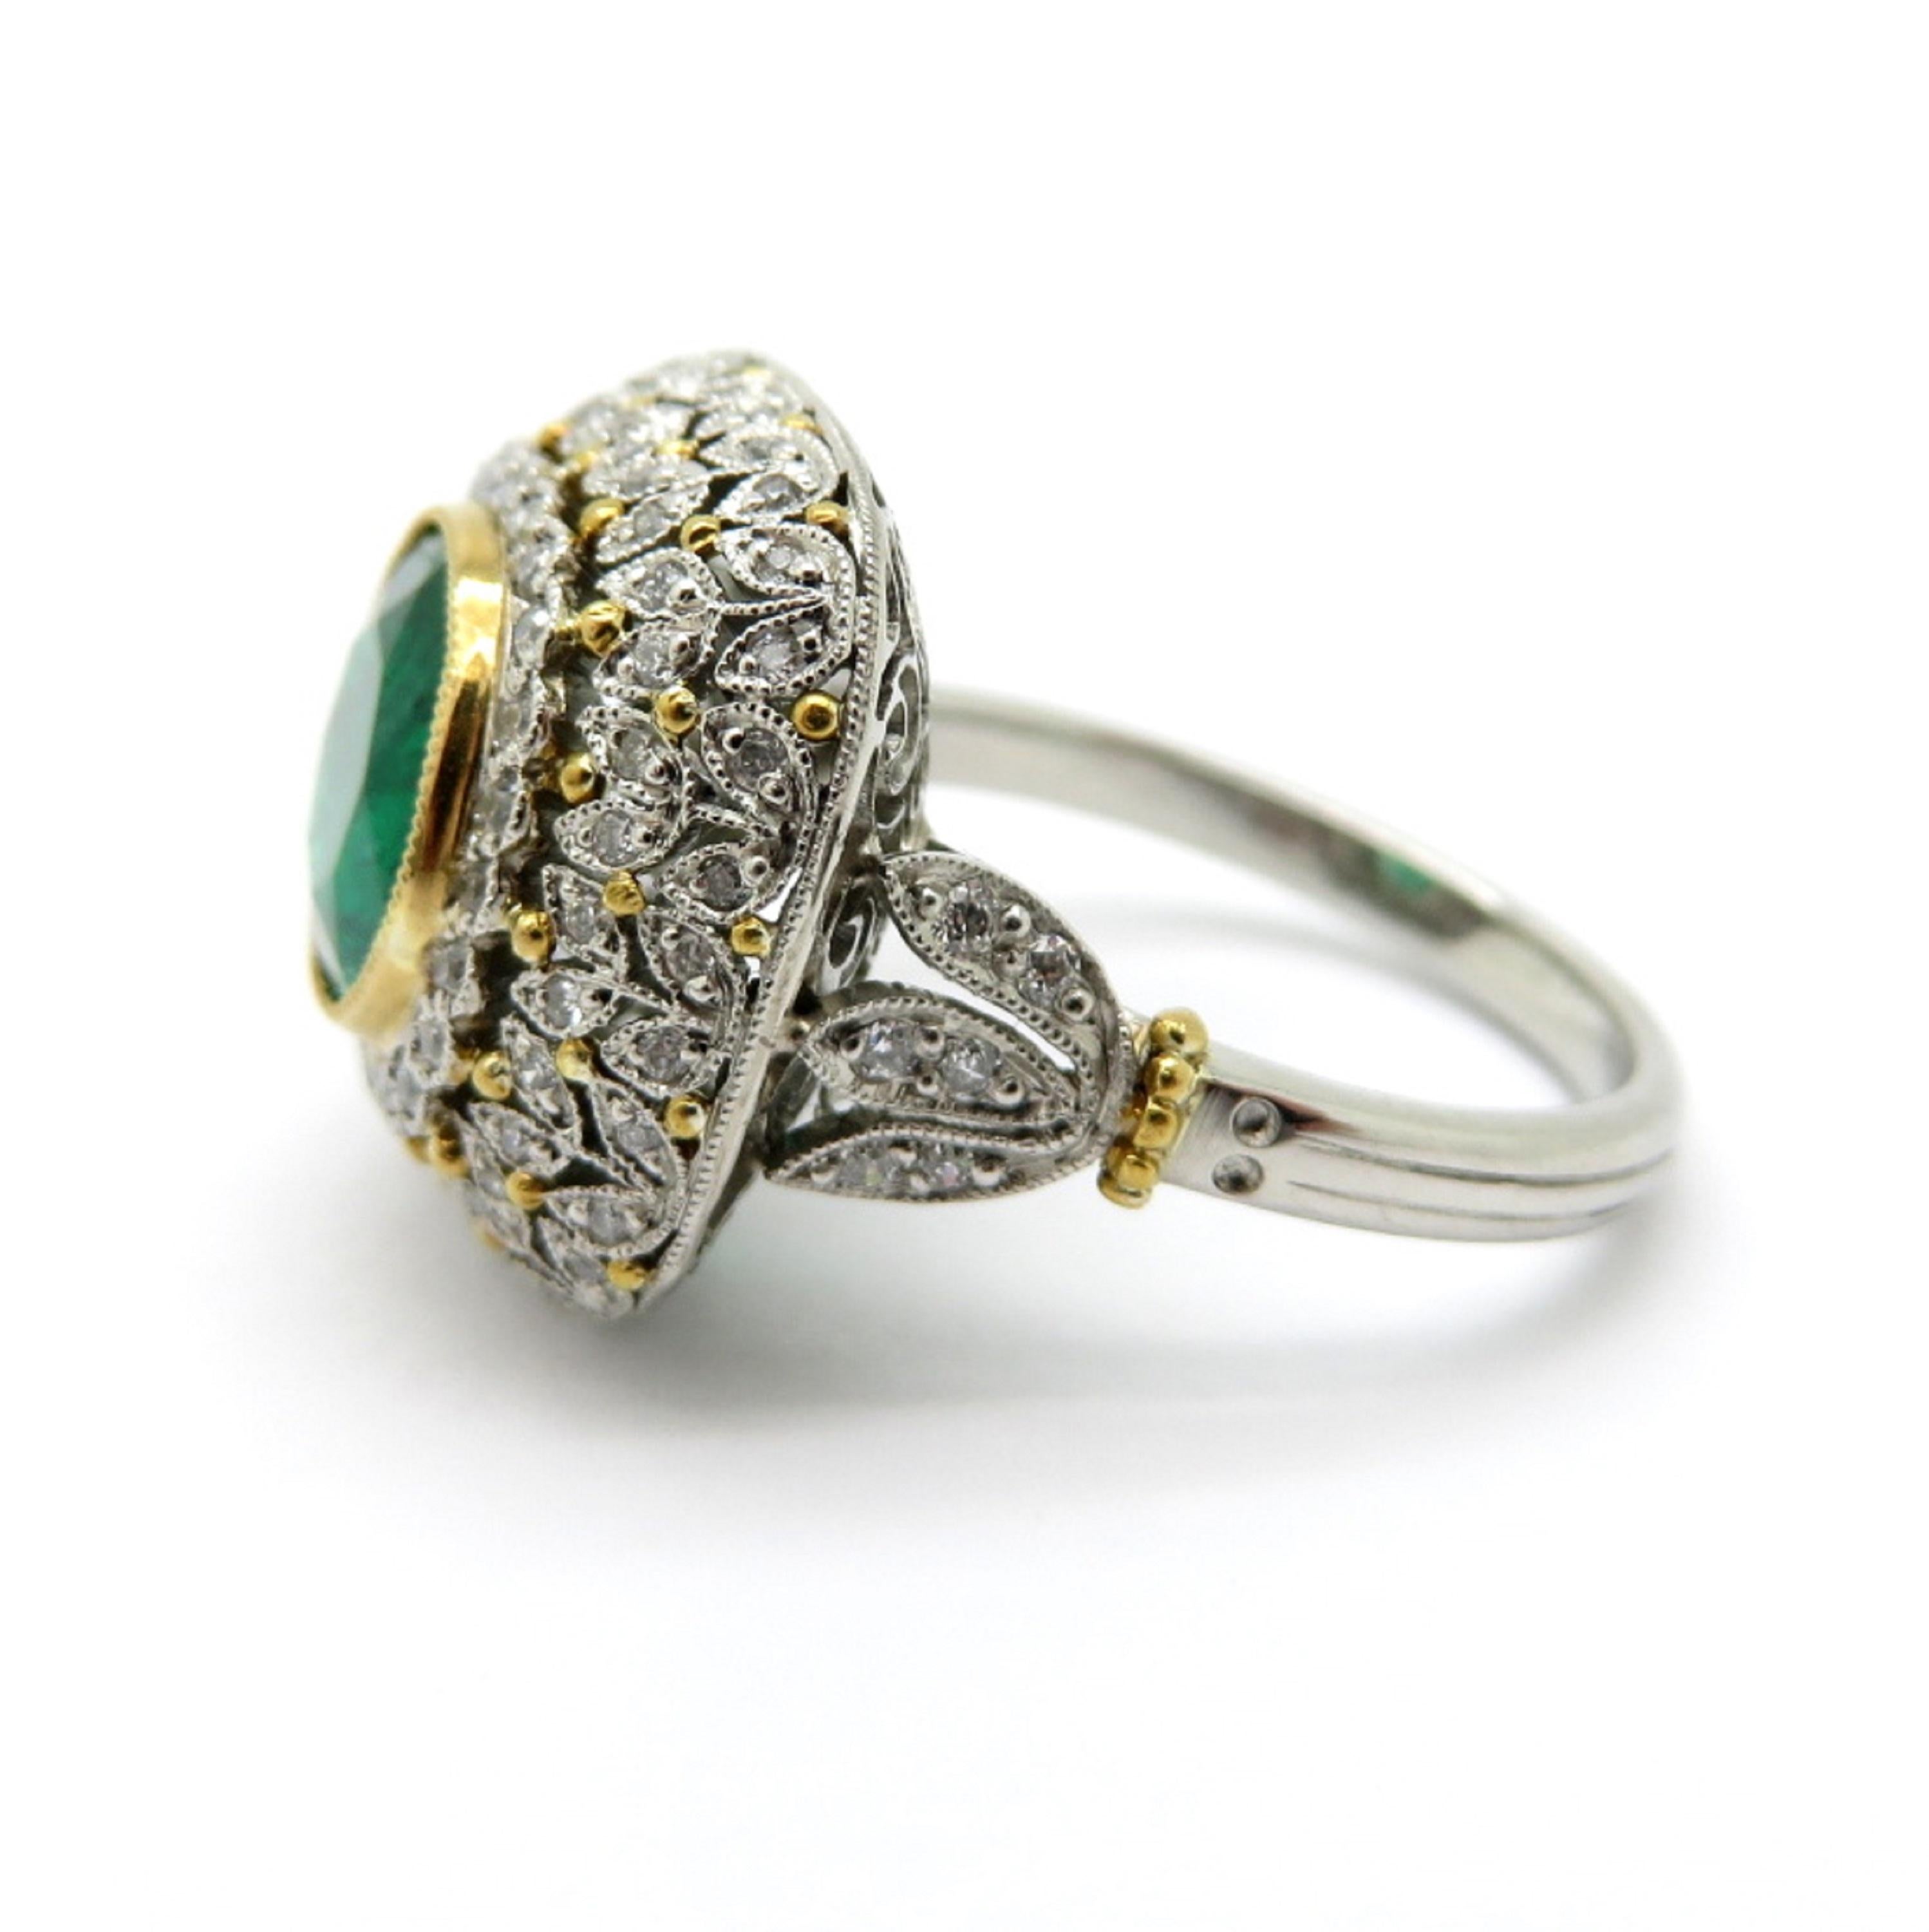 Zu verkaufen ist ein Estate Platin und 18K Gelbgold Victorian Diamond & Emerald Flower Ring!
Ein runder Smaragd mit Brillantschliff und einem Gewicht von 3,07 Karat.
Zahlreiche runde Diamanten im Brillantschliff mit einem Gesamtgewicht von 0,92